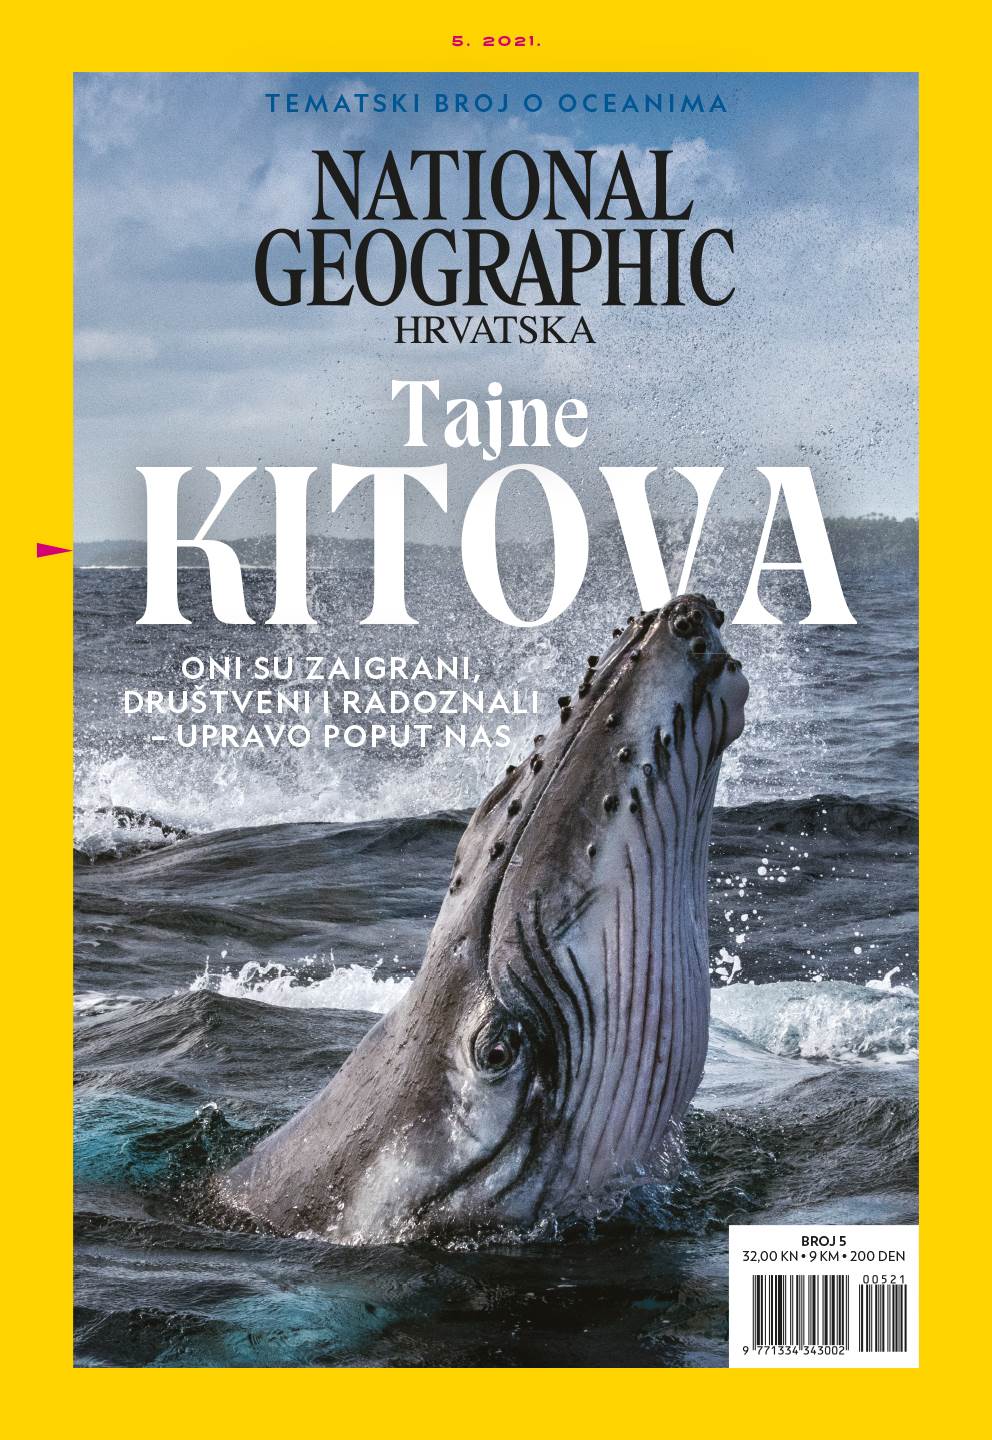 Ne propustite svibanjski broj National Geographica Hrvatska o oceanima!